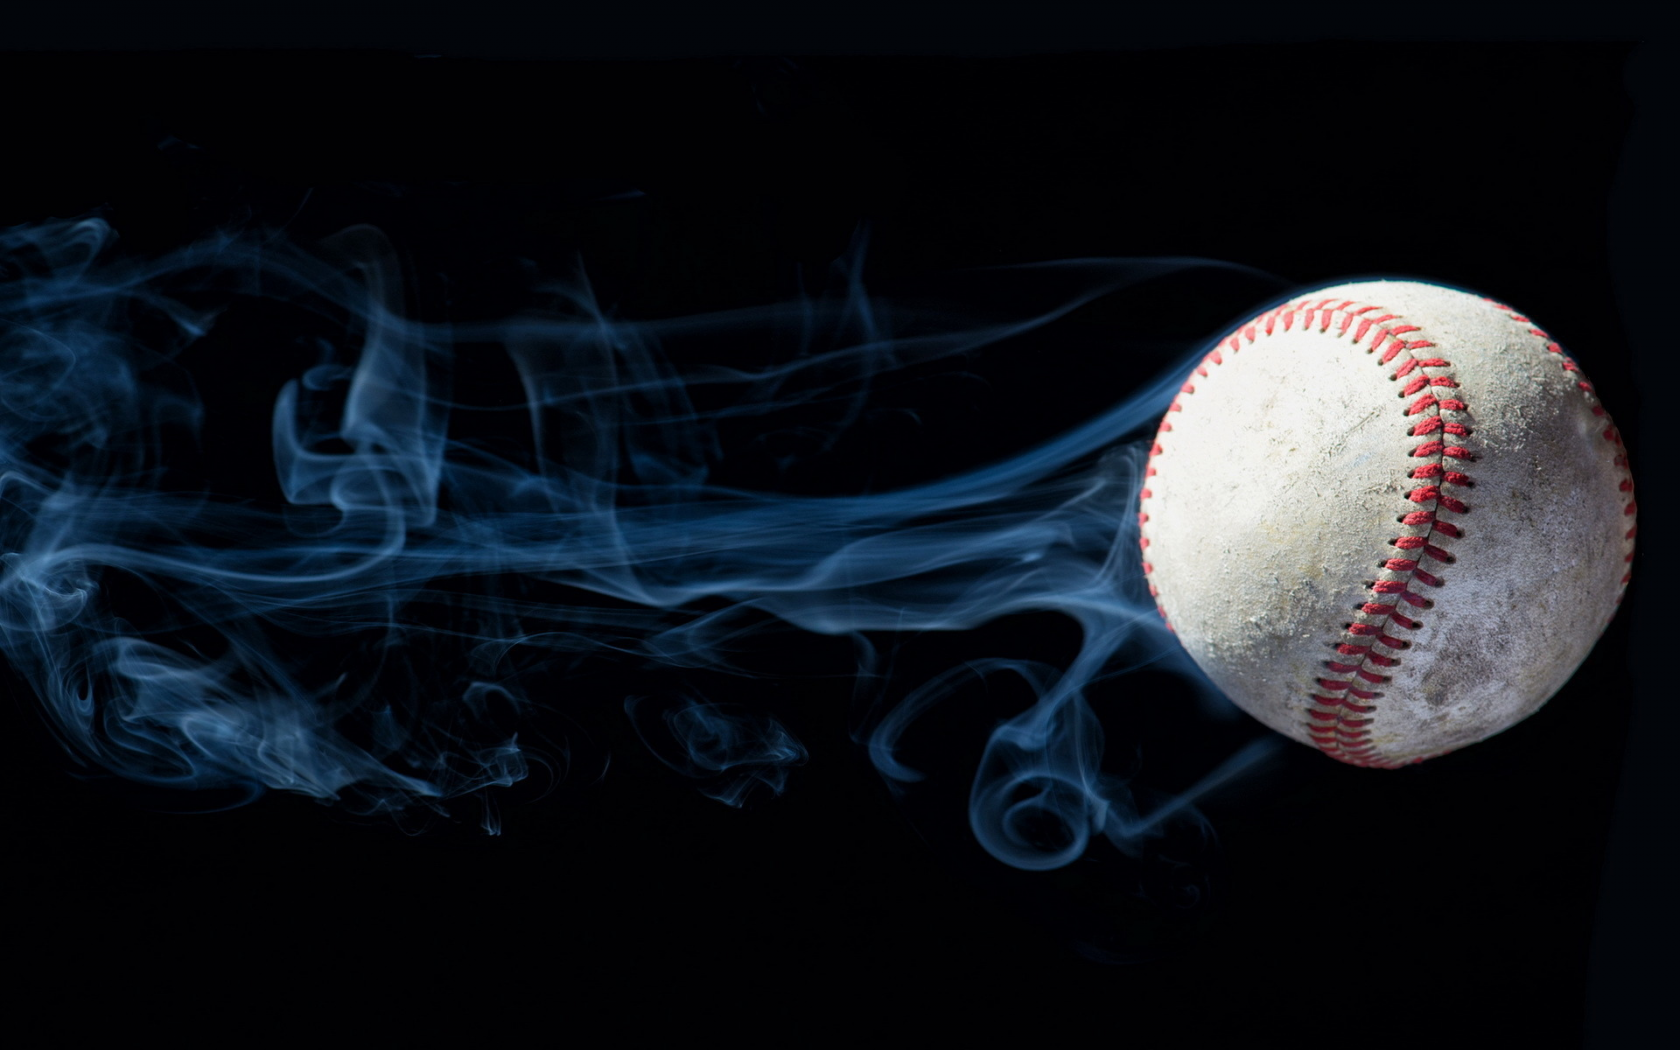 ball, heat, smoke, спорт